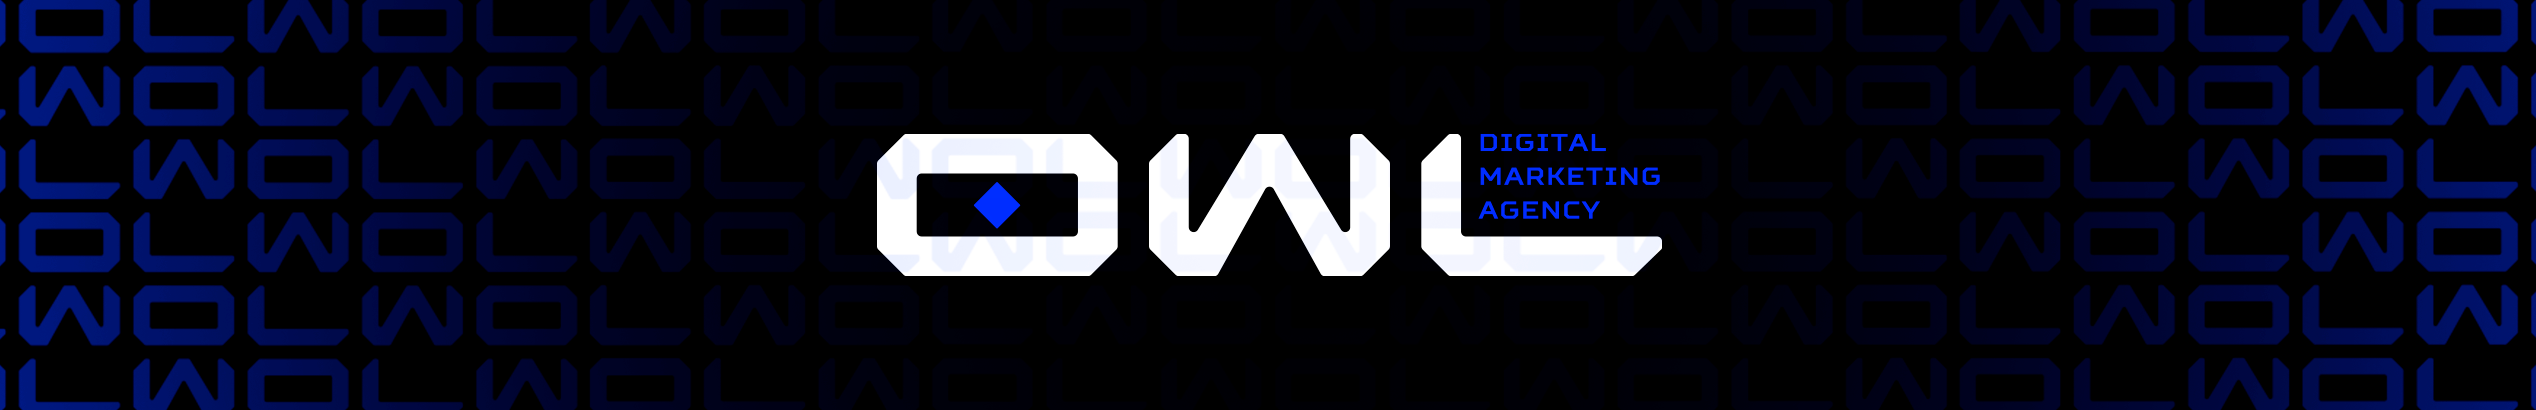 Agência O.W.L's profile banner